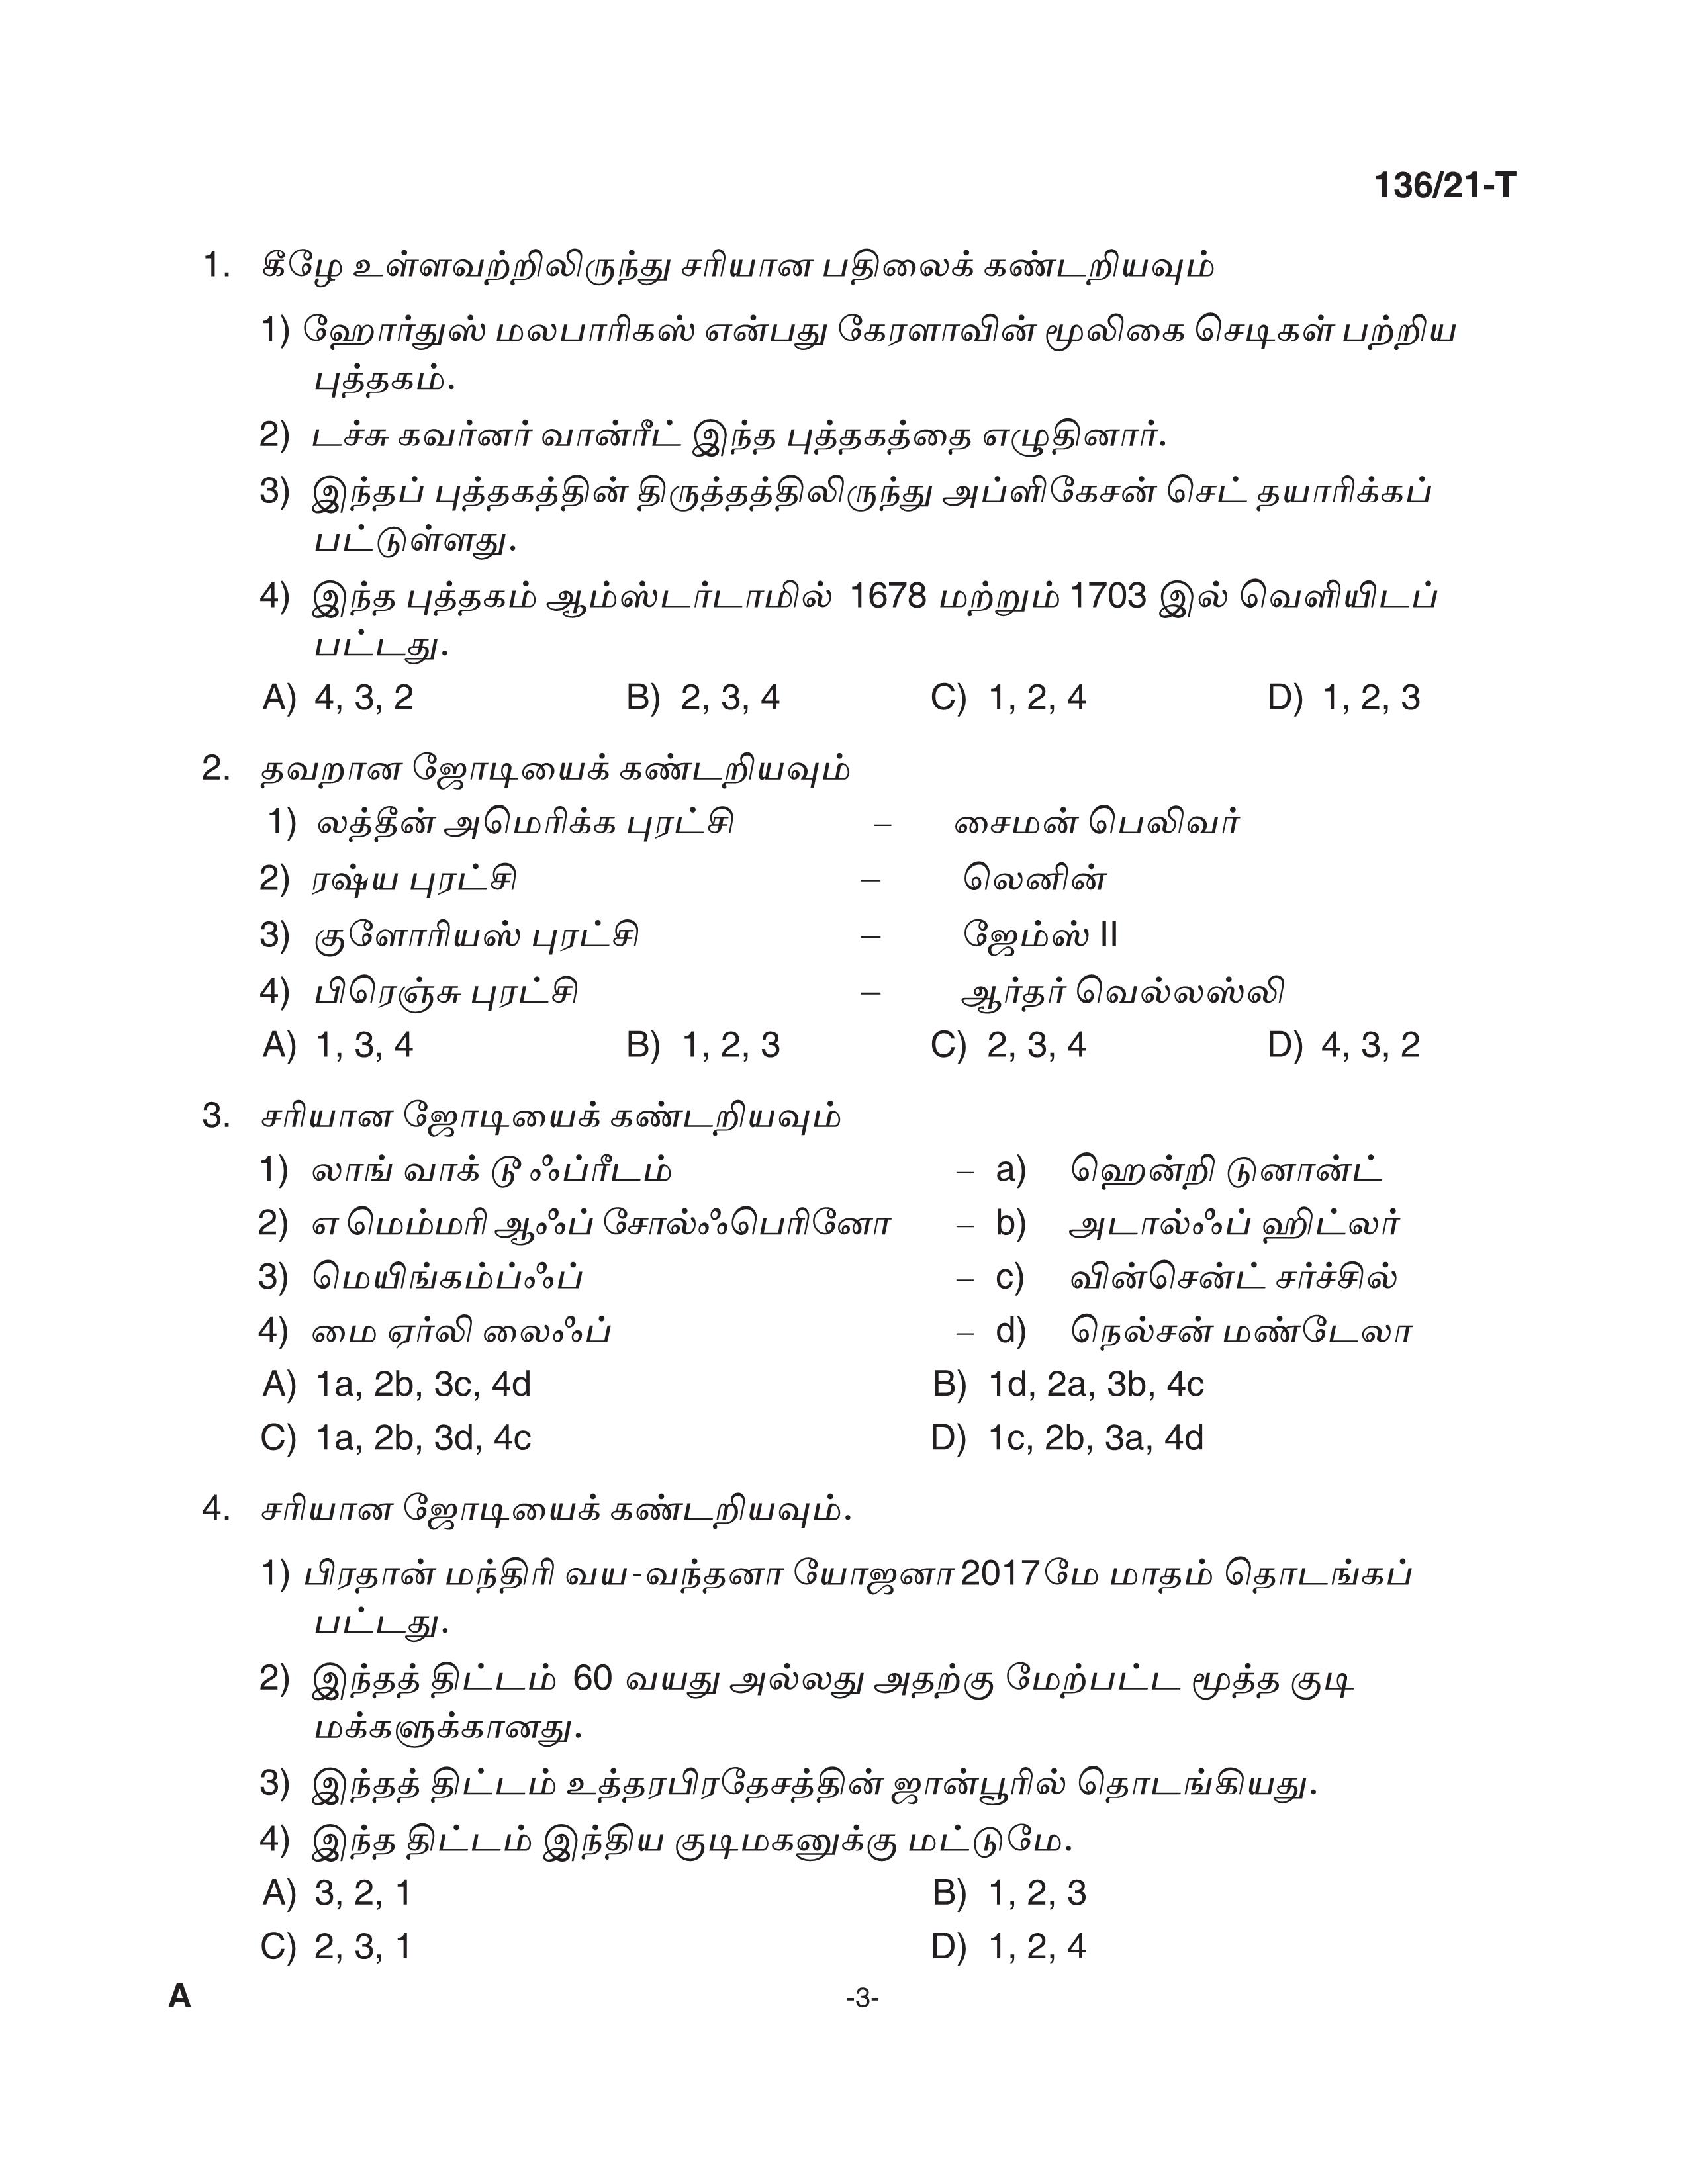 KPSC Village Extension Officer Tamil Exam 2021 Code 1362021 T 2